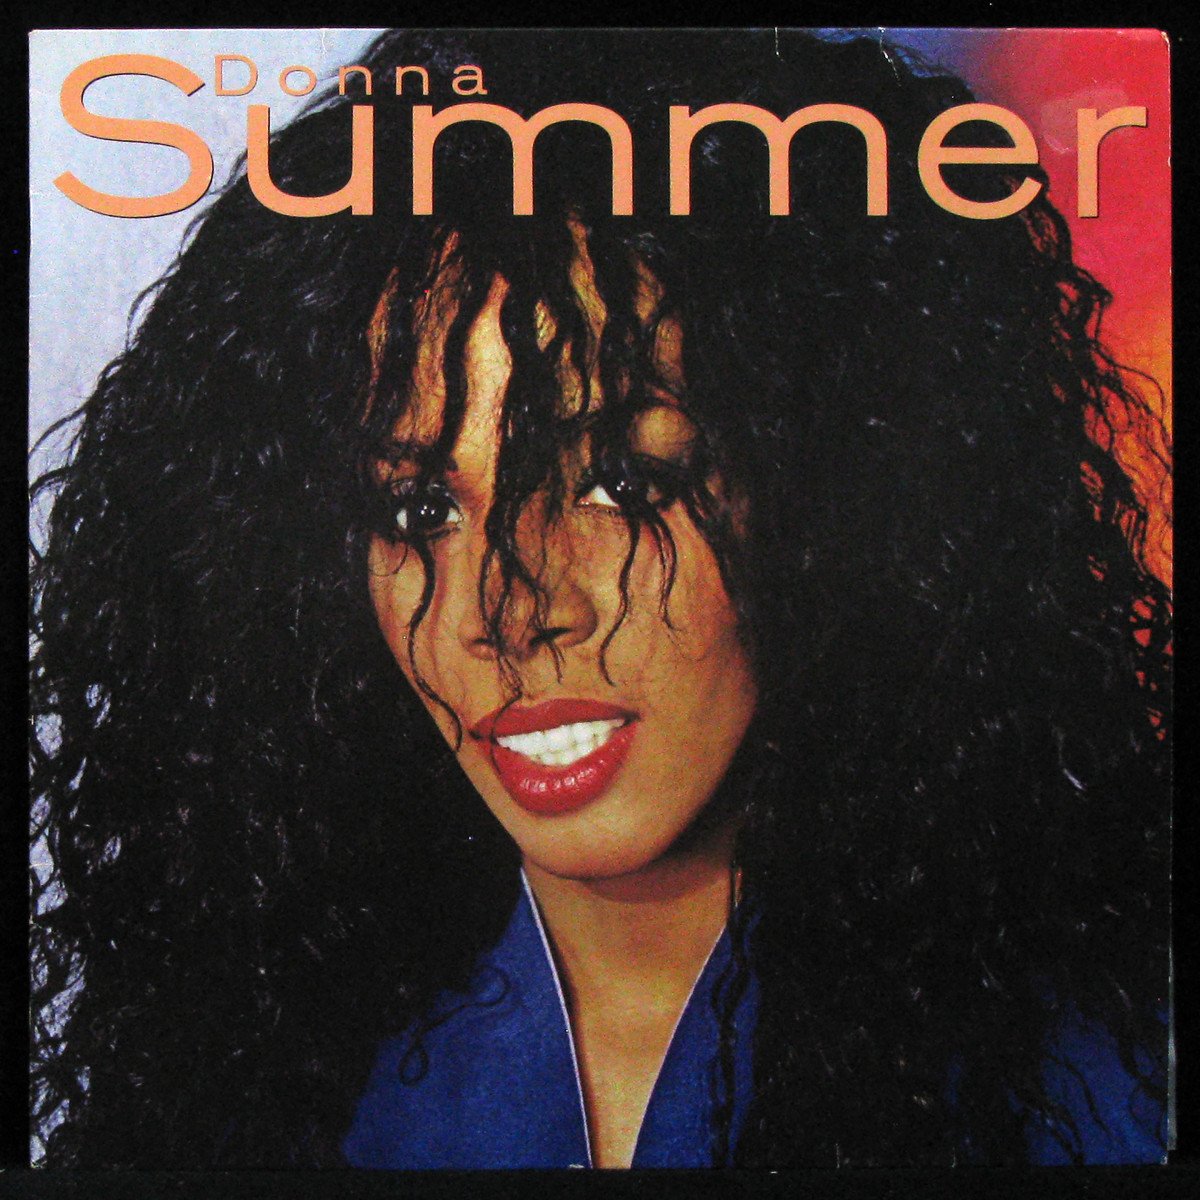 LP Donna Summer — Donna Summer фото